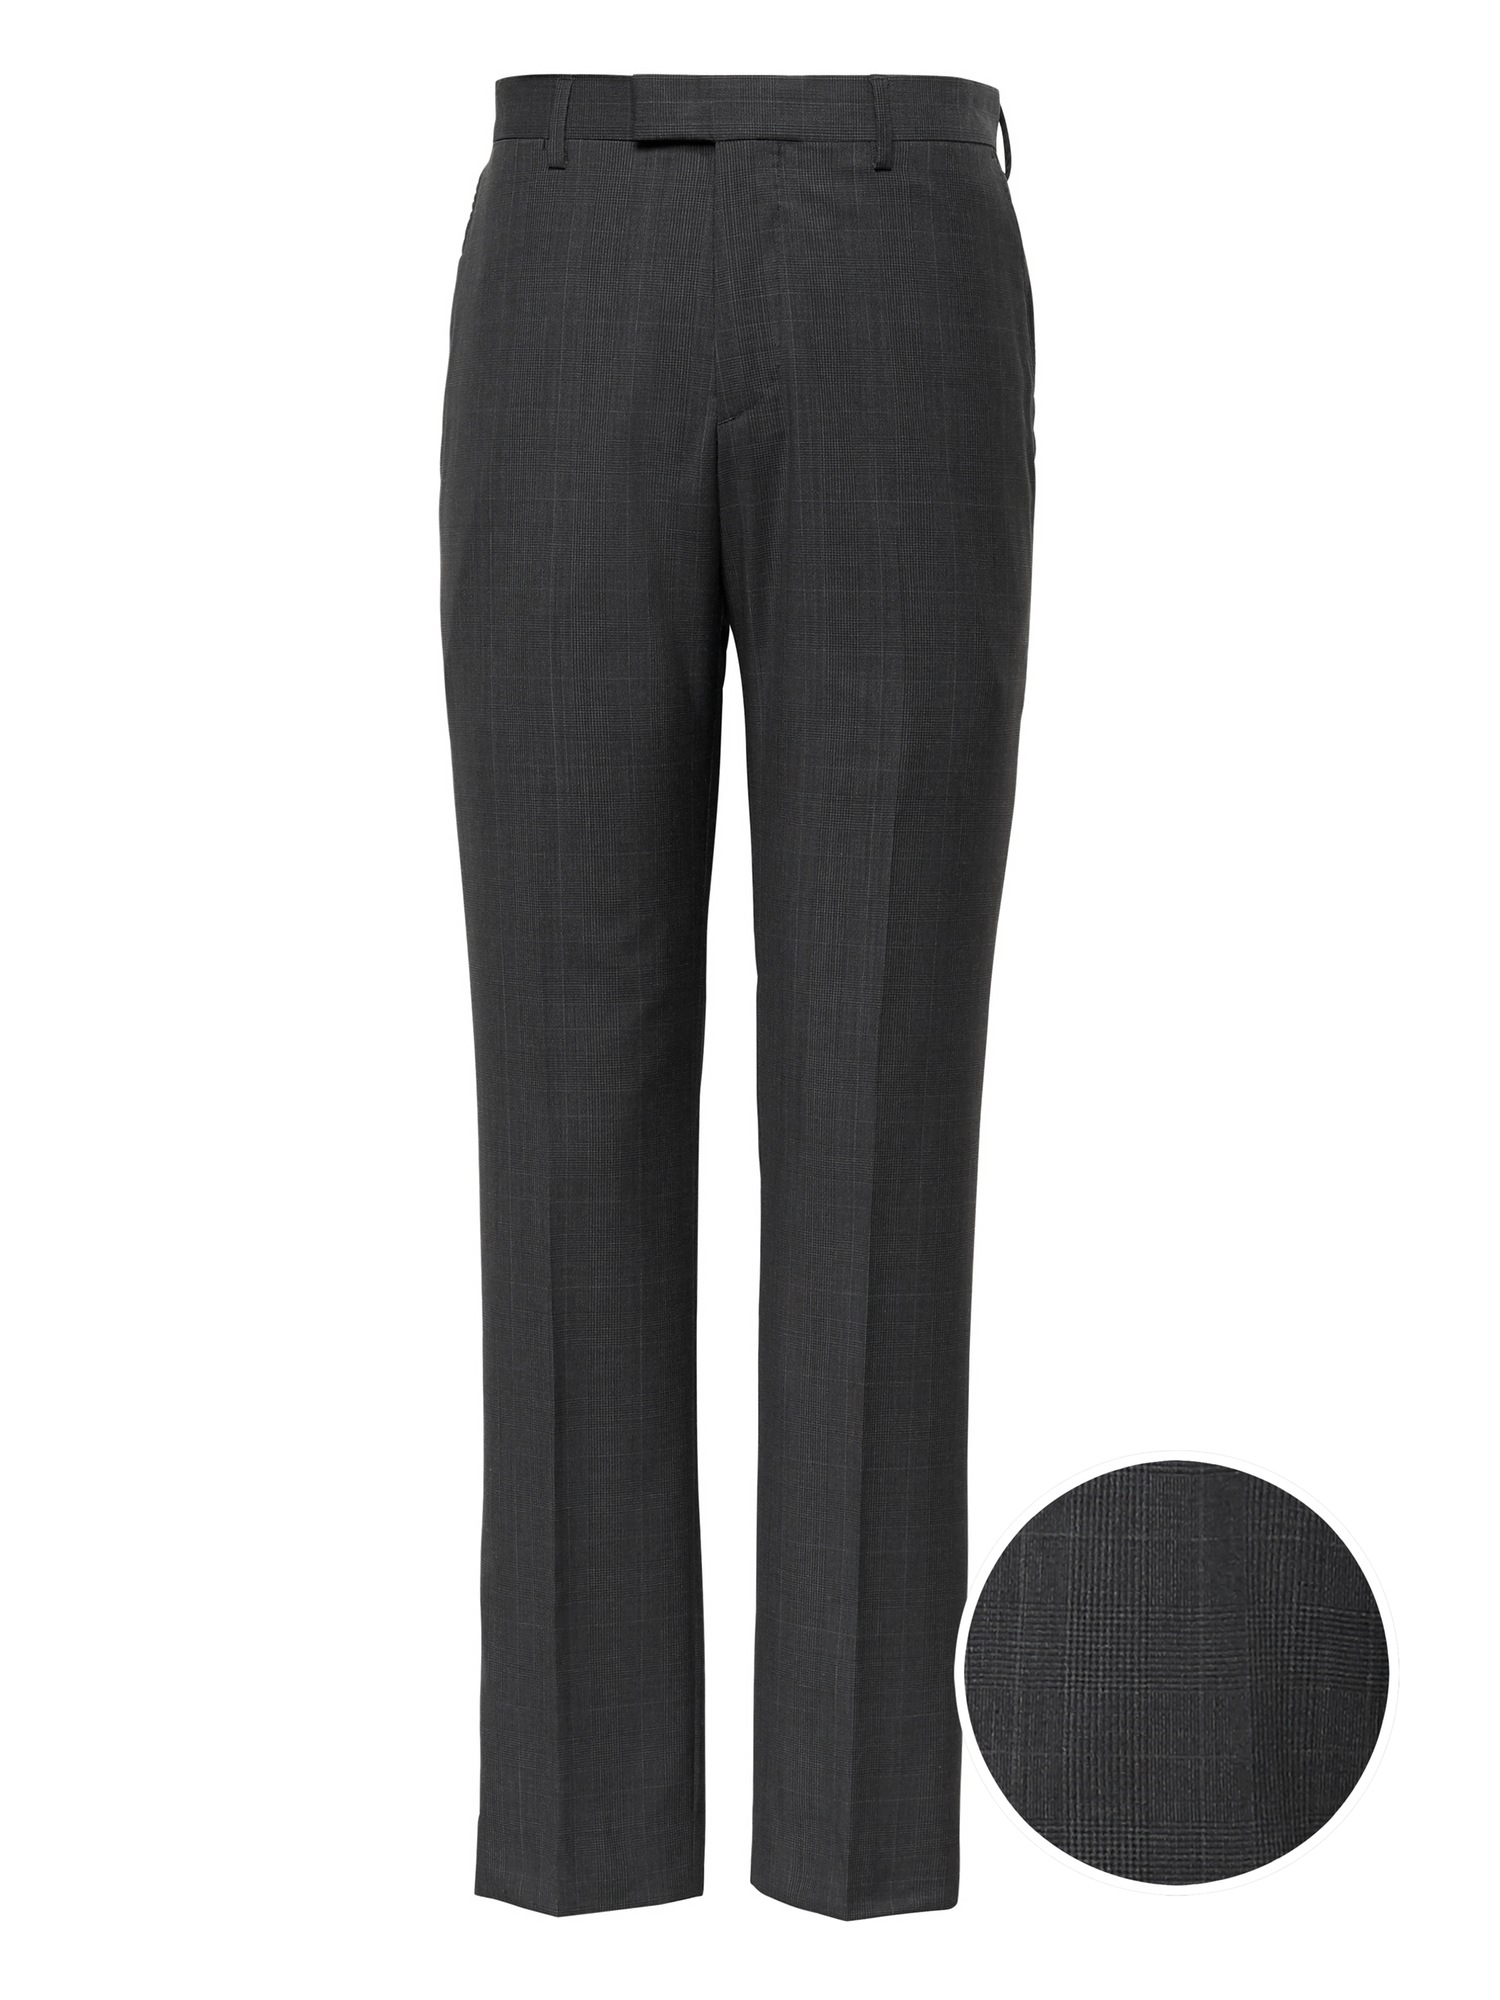 Slim Italian Wool Plaid Suit Pant